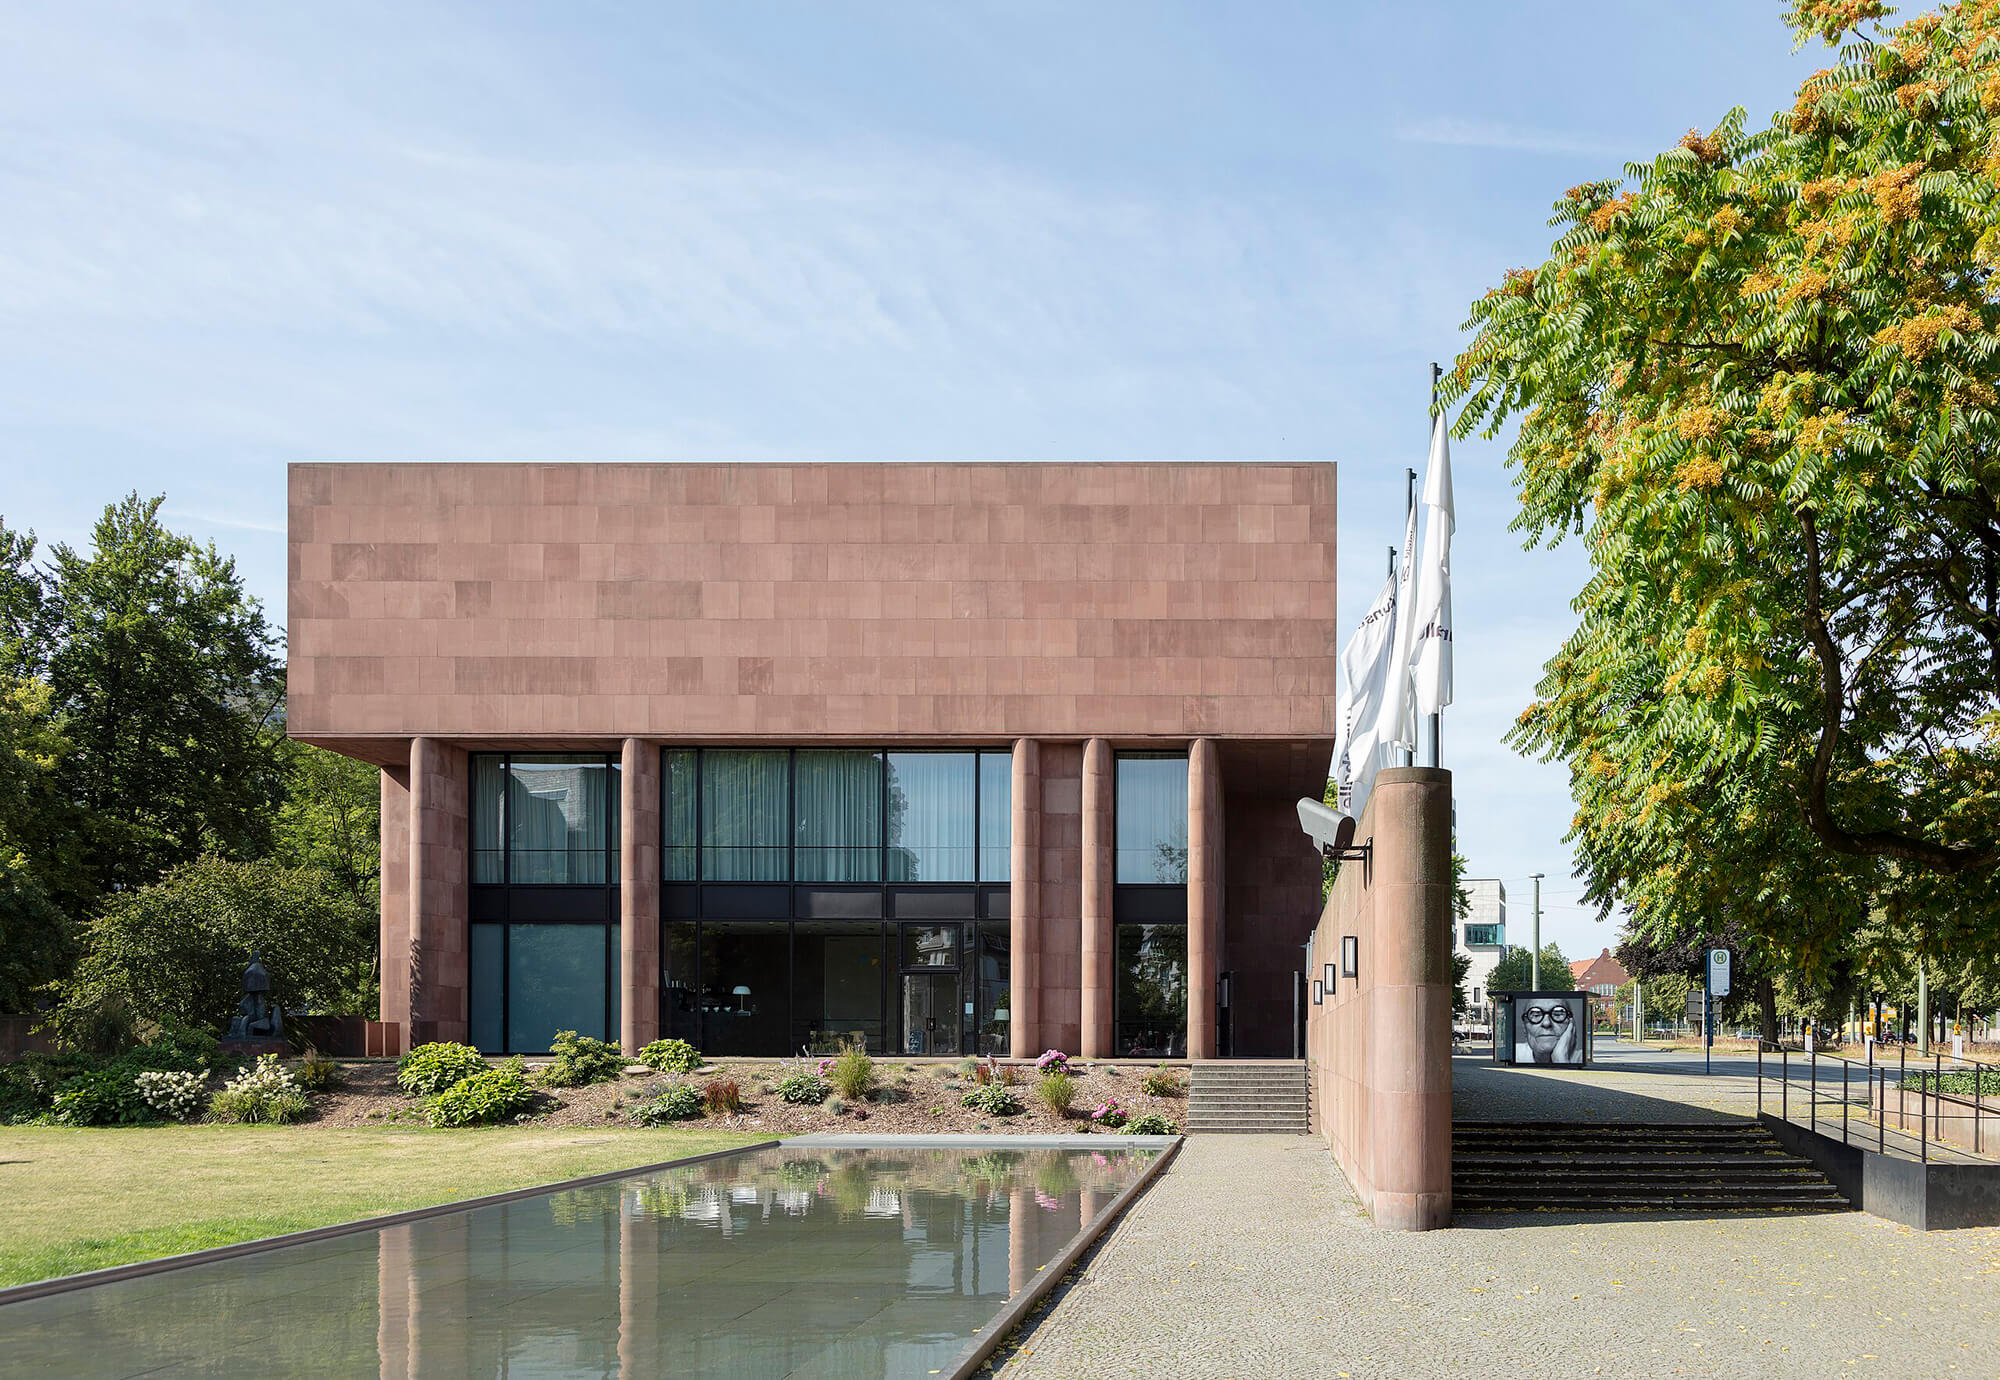 معماران کاروسو سنت جان ساختمان فیلیپ جانسون Kunsthalle Bielefeld را بازسازی می کند، ساختمانی که توسط گذشته اش تسخیر شده است.